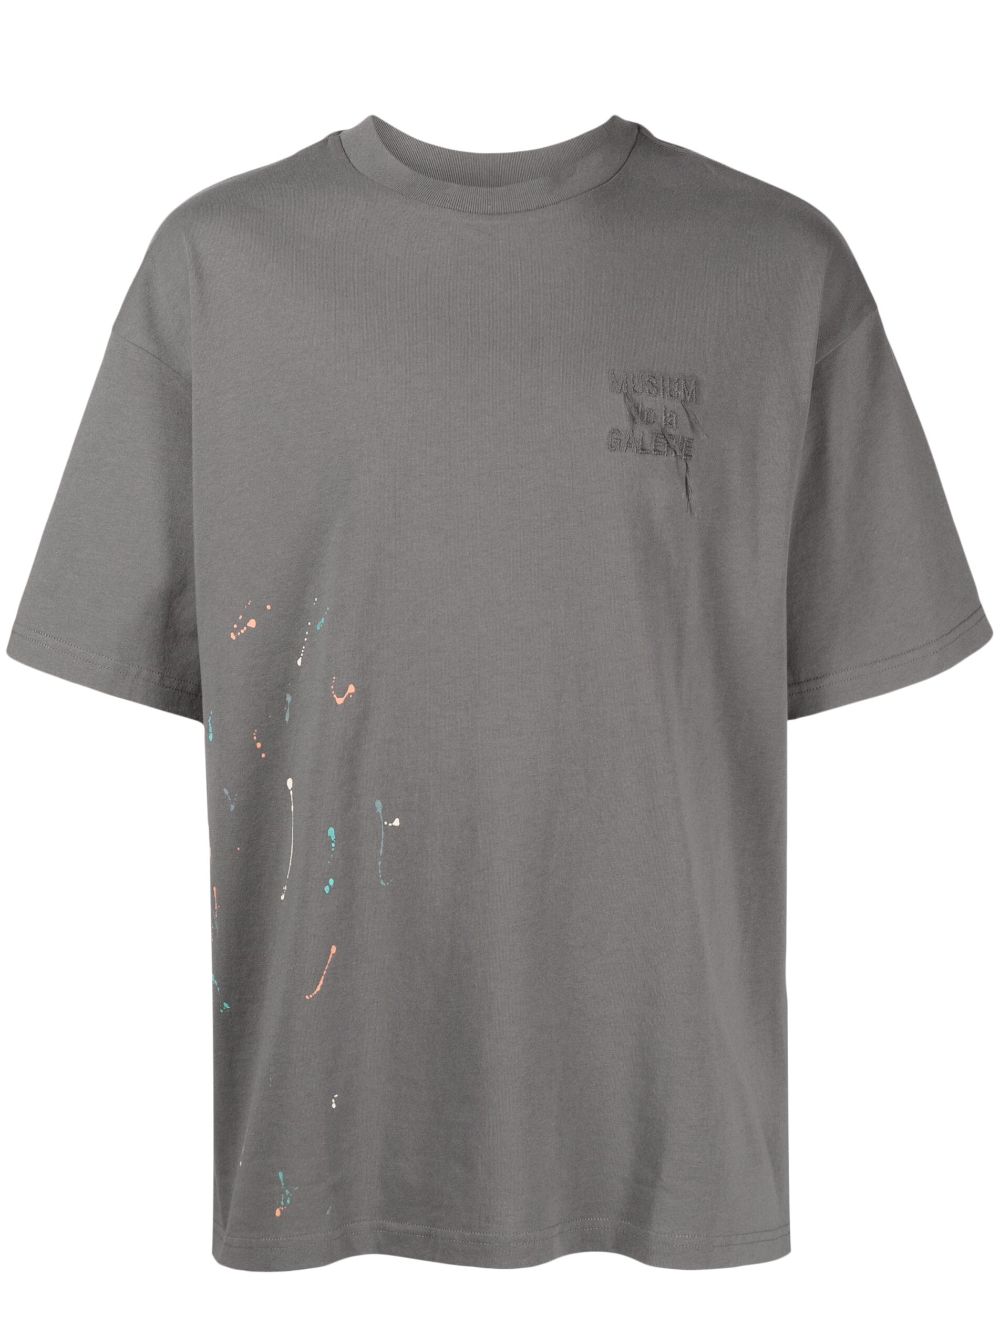 paint-splatter-detail cotton T-shirt